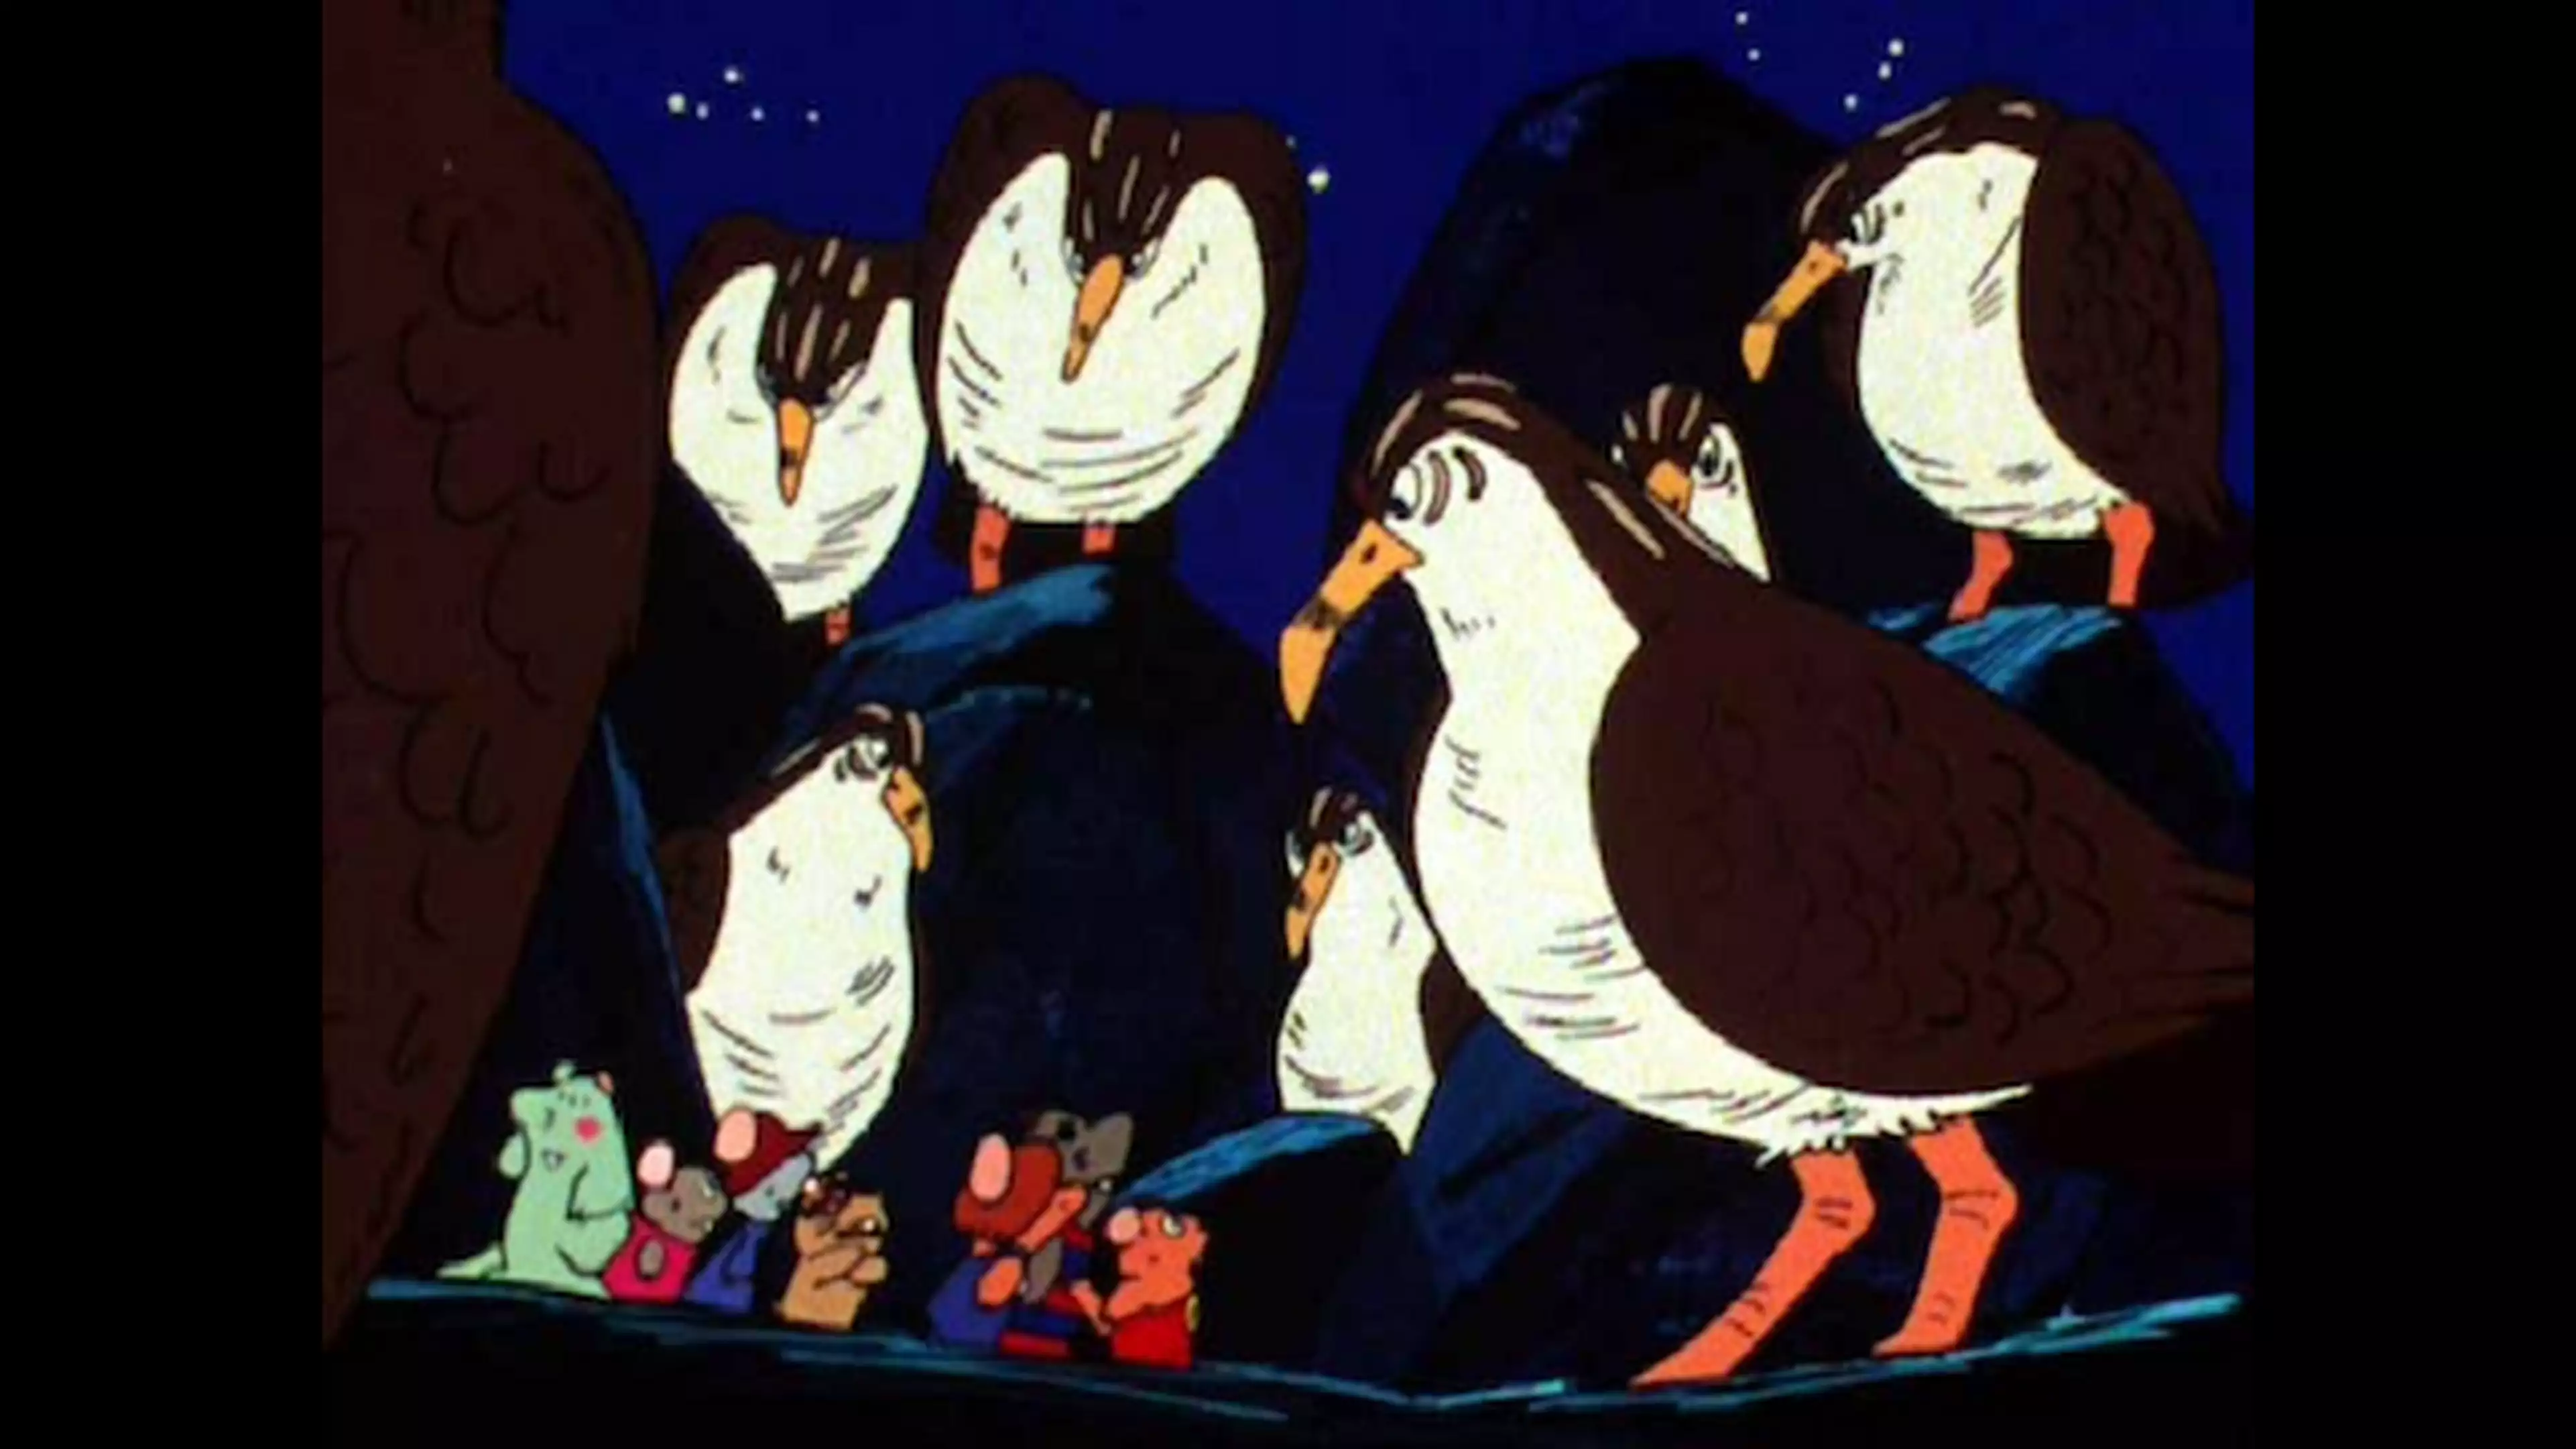 ガンバの冒険 19 闇に潜むオオミズナギ鳥 アニメ 1975年 の動画視聴 あらすじ U Next